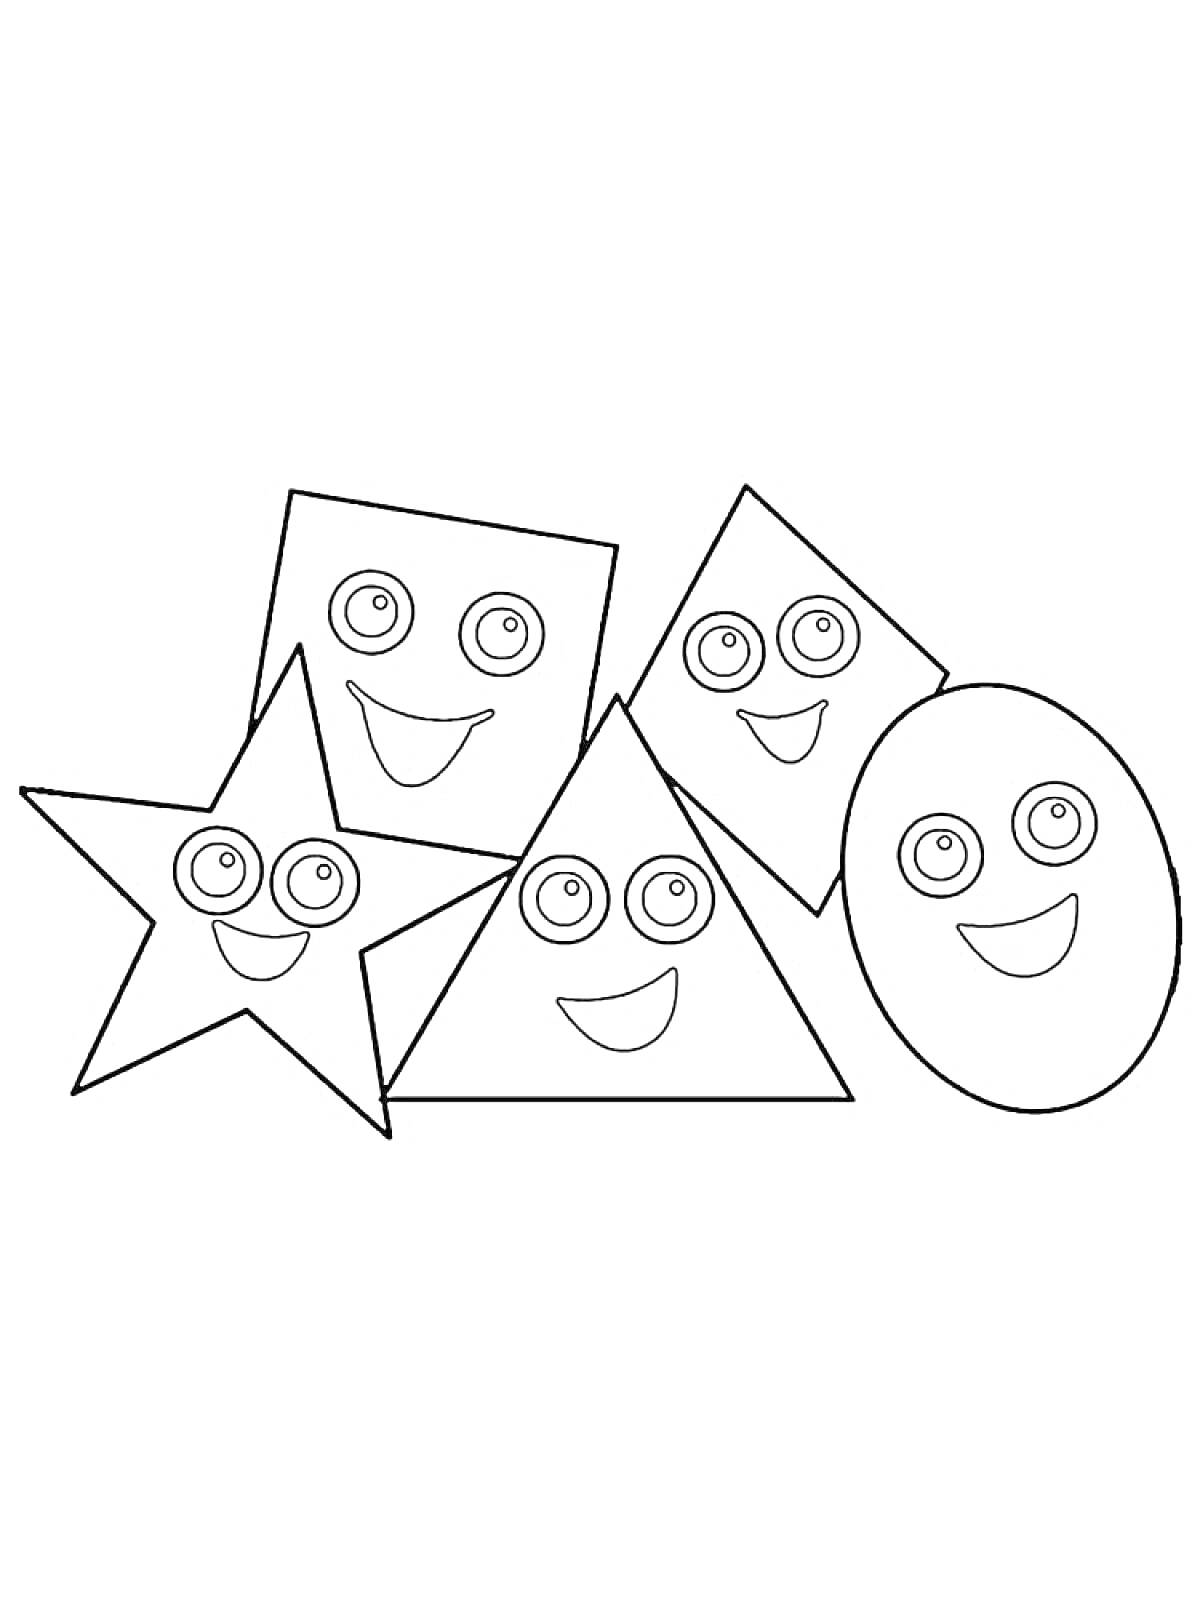 Раскраска Звезда, квадрат, ромб, треугольник, овал с лицами